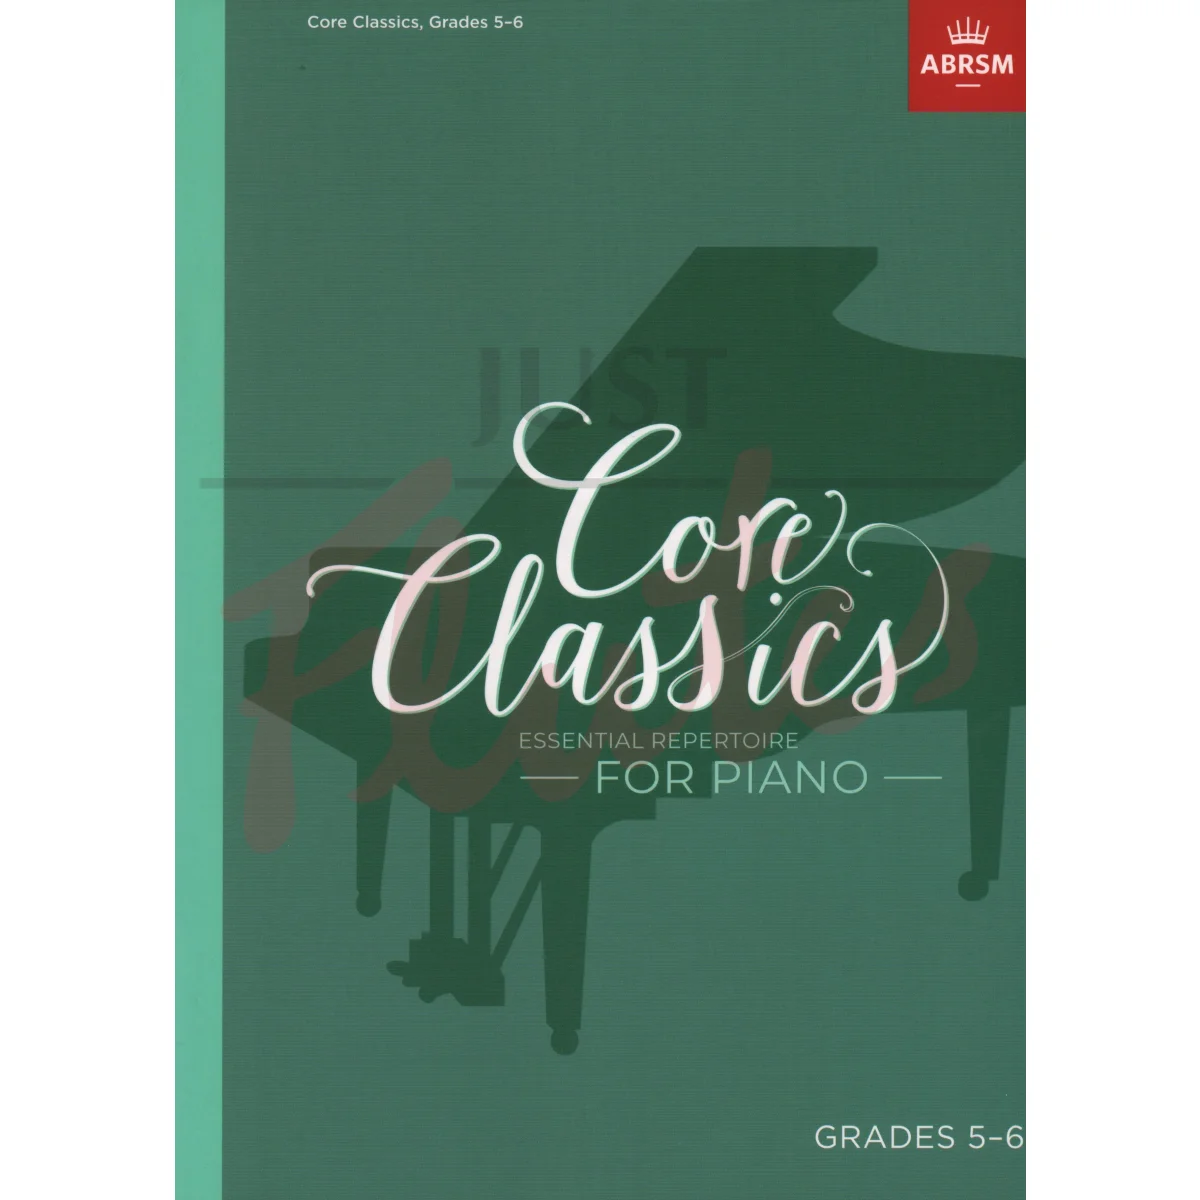 Core Classics Grades 5-6 Essential Repertoire for Piano